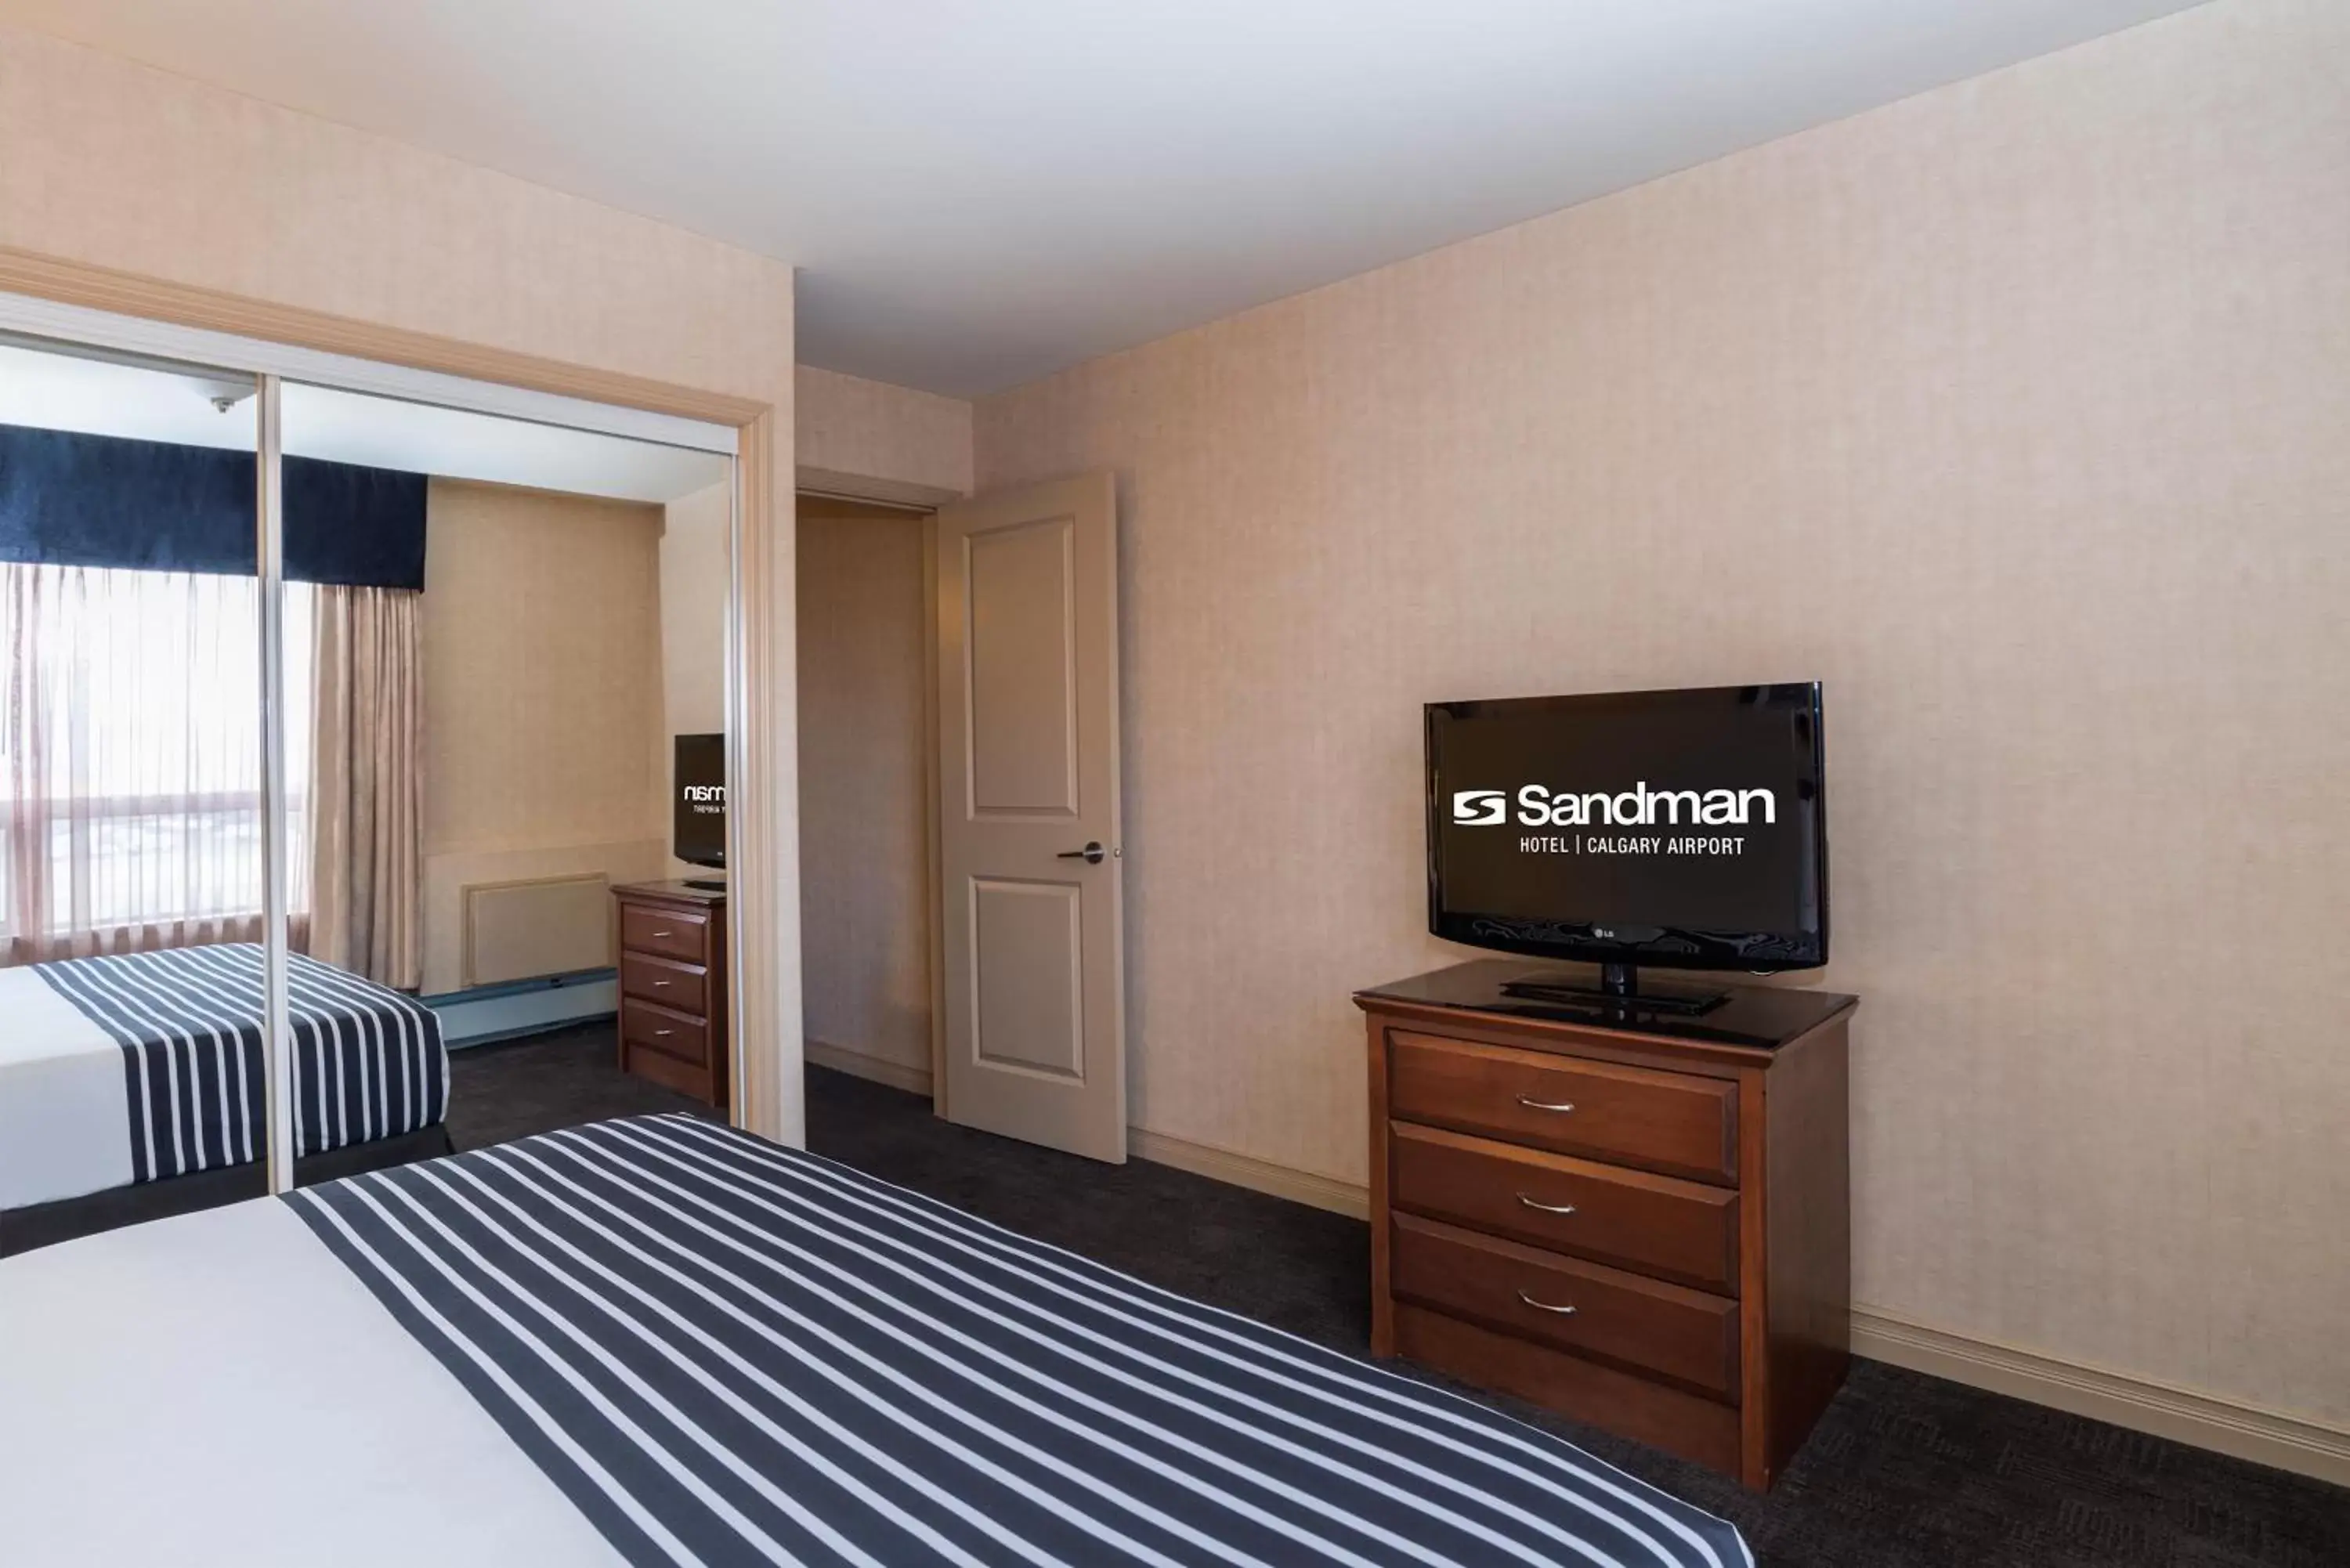 Bedroom in Sandman Hotel Calgary Airport